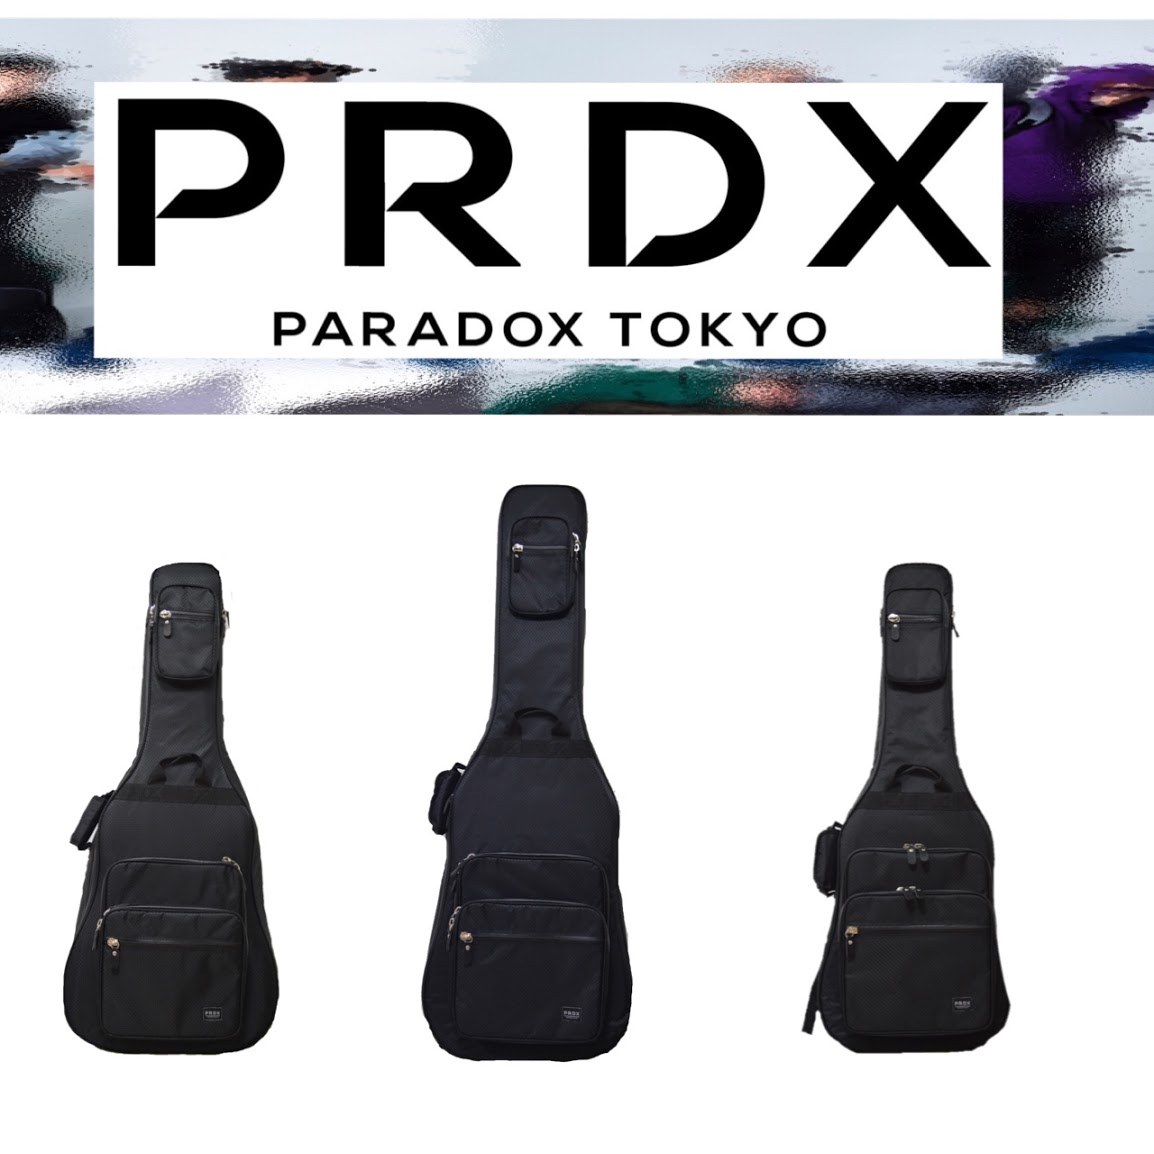 *島村楽器×PARADOXギター＆ベースケース *『PARADOX　TOKYO』とは… 世の中の矛盾から生まれるエネルギーを軸に、新たなクリエーションの可能性を追求し続ける実験的なウェアライン。FASHIONという枠組を超え、MUSIC・ART等の様々なカルチャーと結びつきながら新たな形を表現してい […]